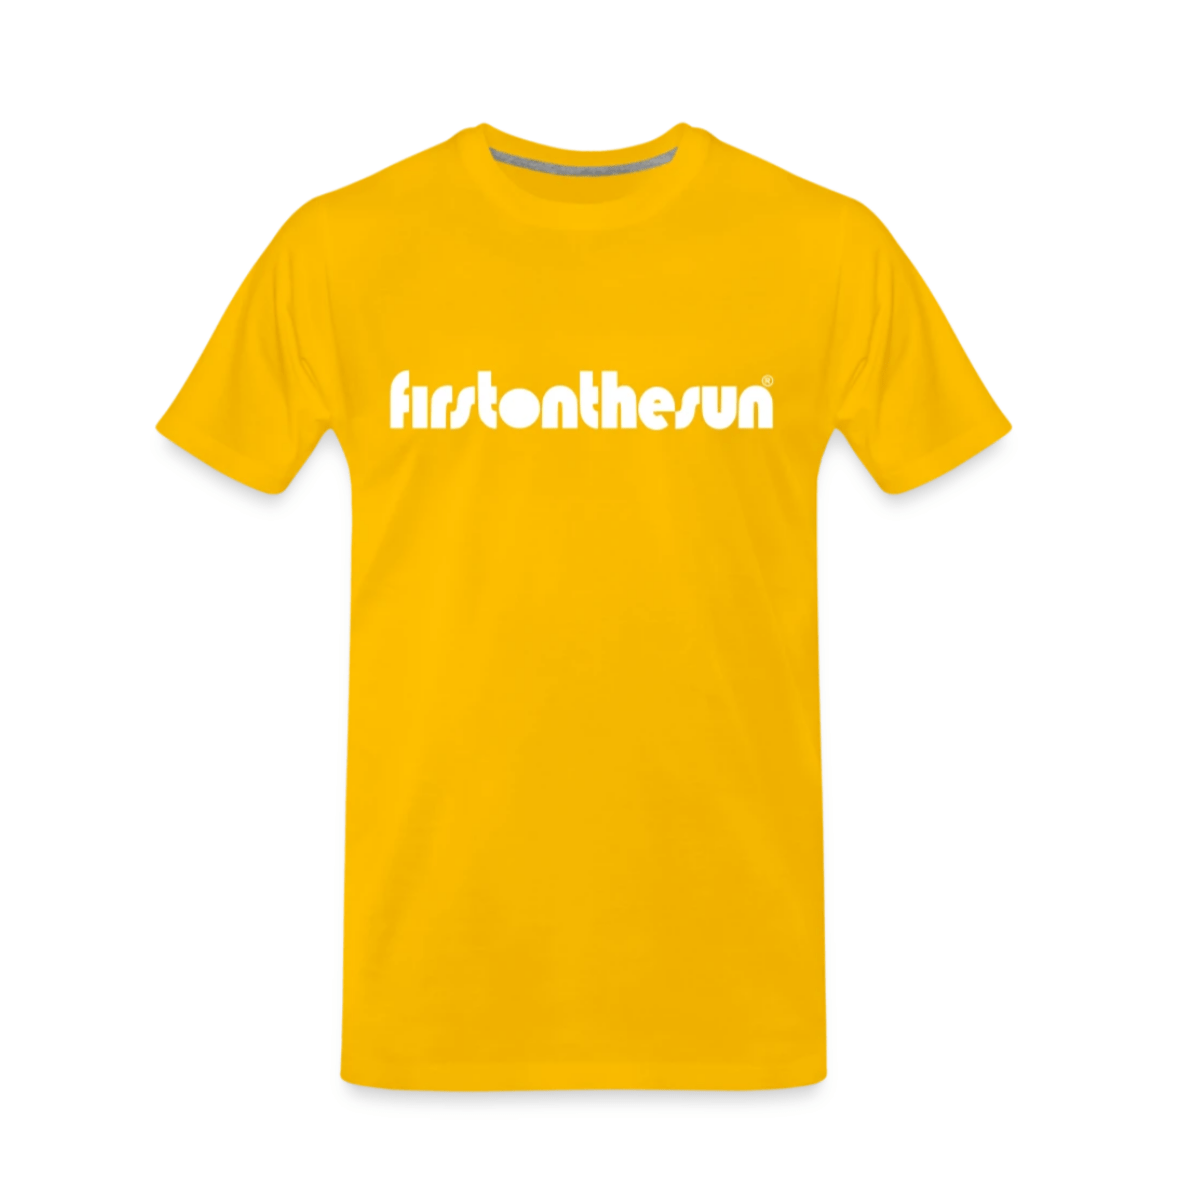 Spirituelles T-Shirt in Gelb von First on the Sun mit weißem Schriftzug